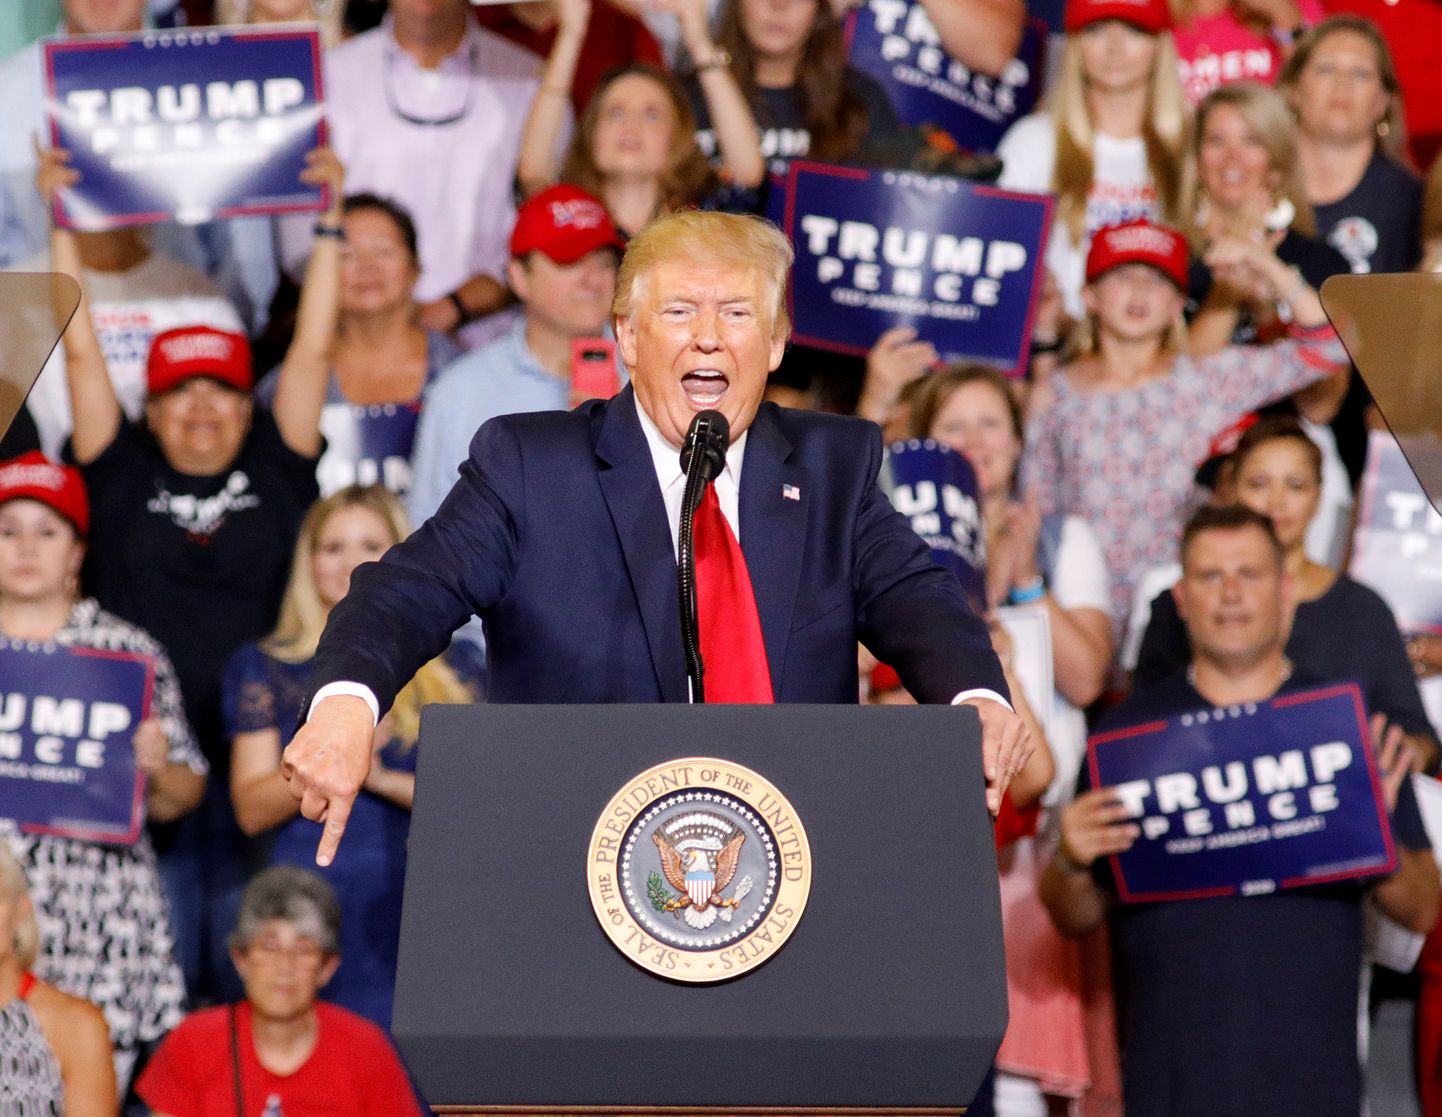 Ameerika Ühendriikide president Donald Trump korraldab kampaaniaüritusi, valmistudes 2020. aasta presidendivalimisteks.